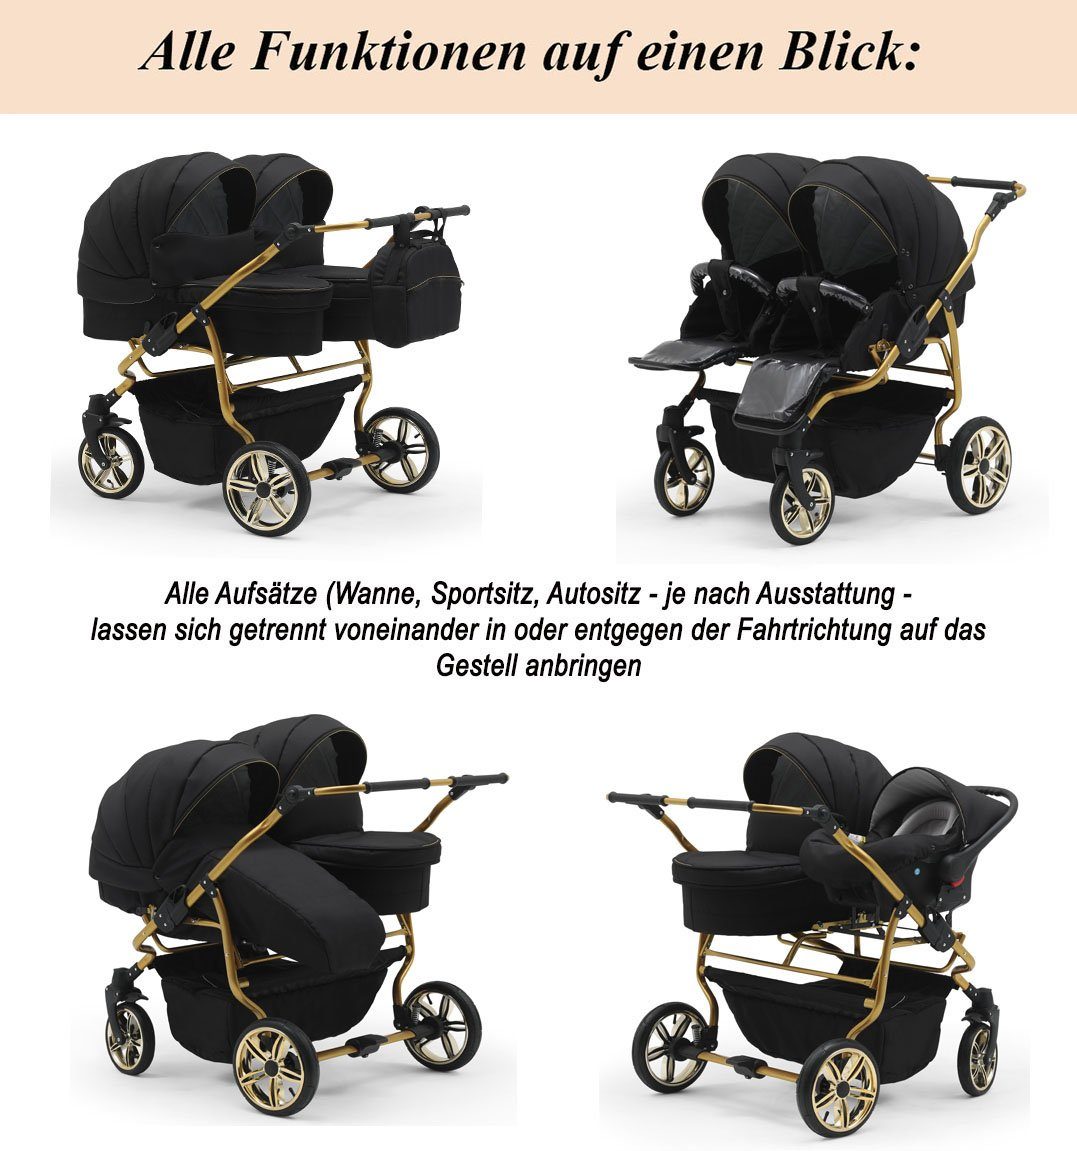 15 - Zwillingswagen in Lux Teile Gold Farben Duet Weiß-Bordeaux babies-on-wheels 4 Zwillingswagen in 1 - 33